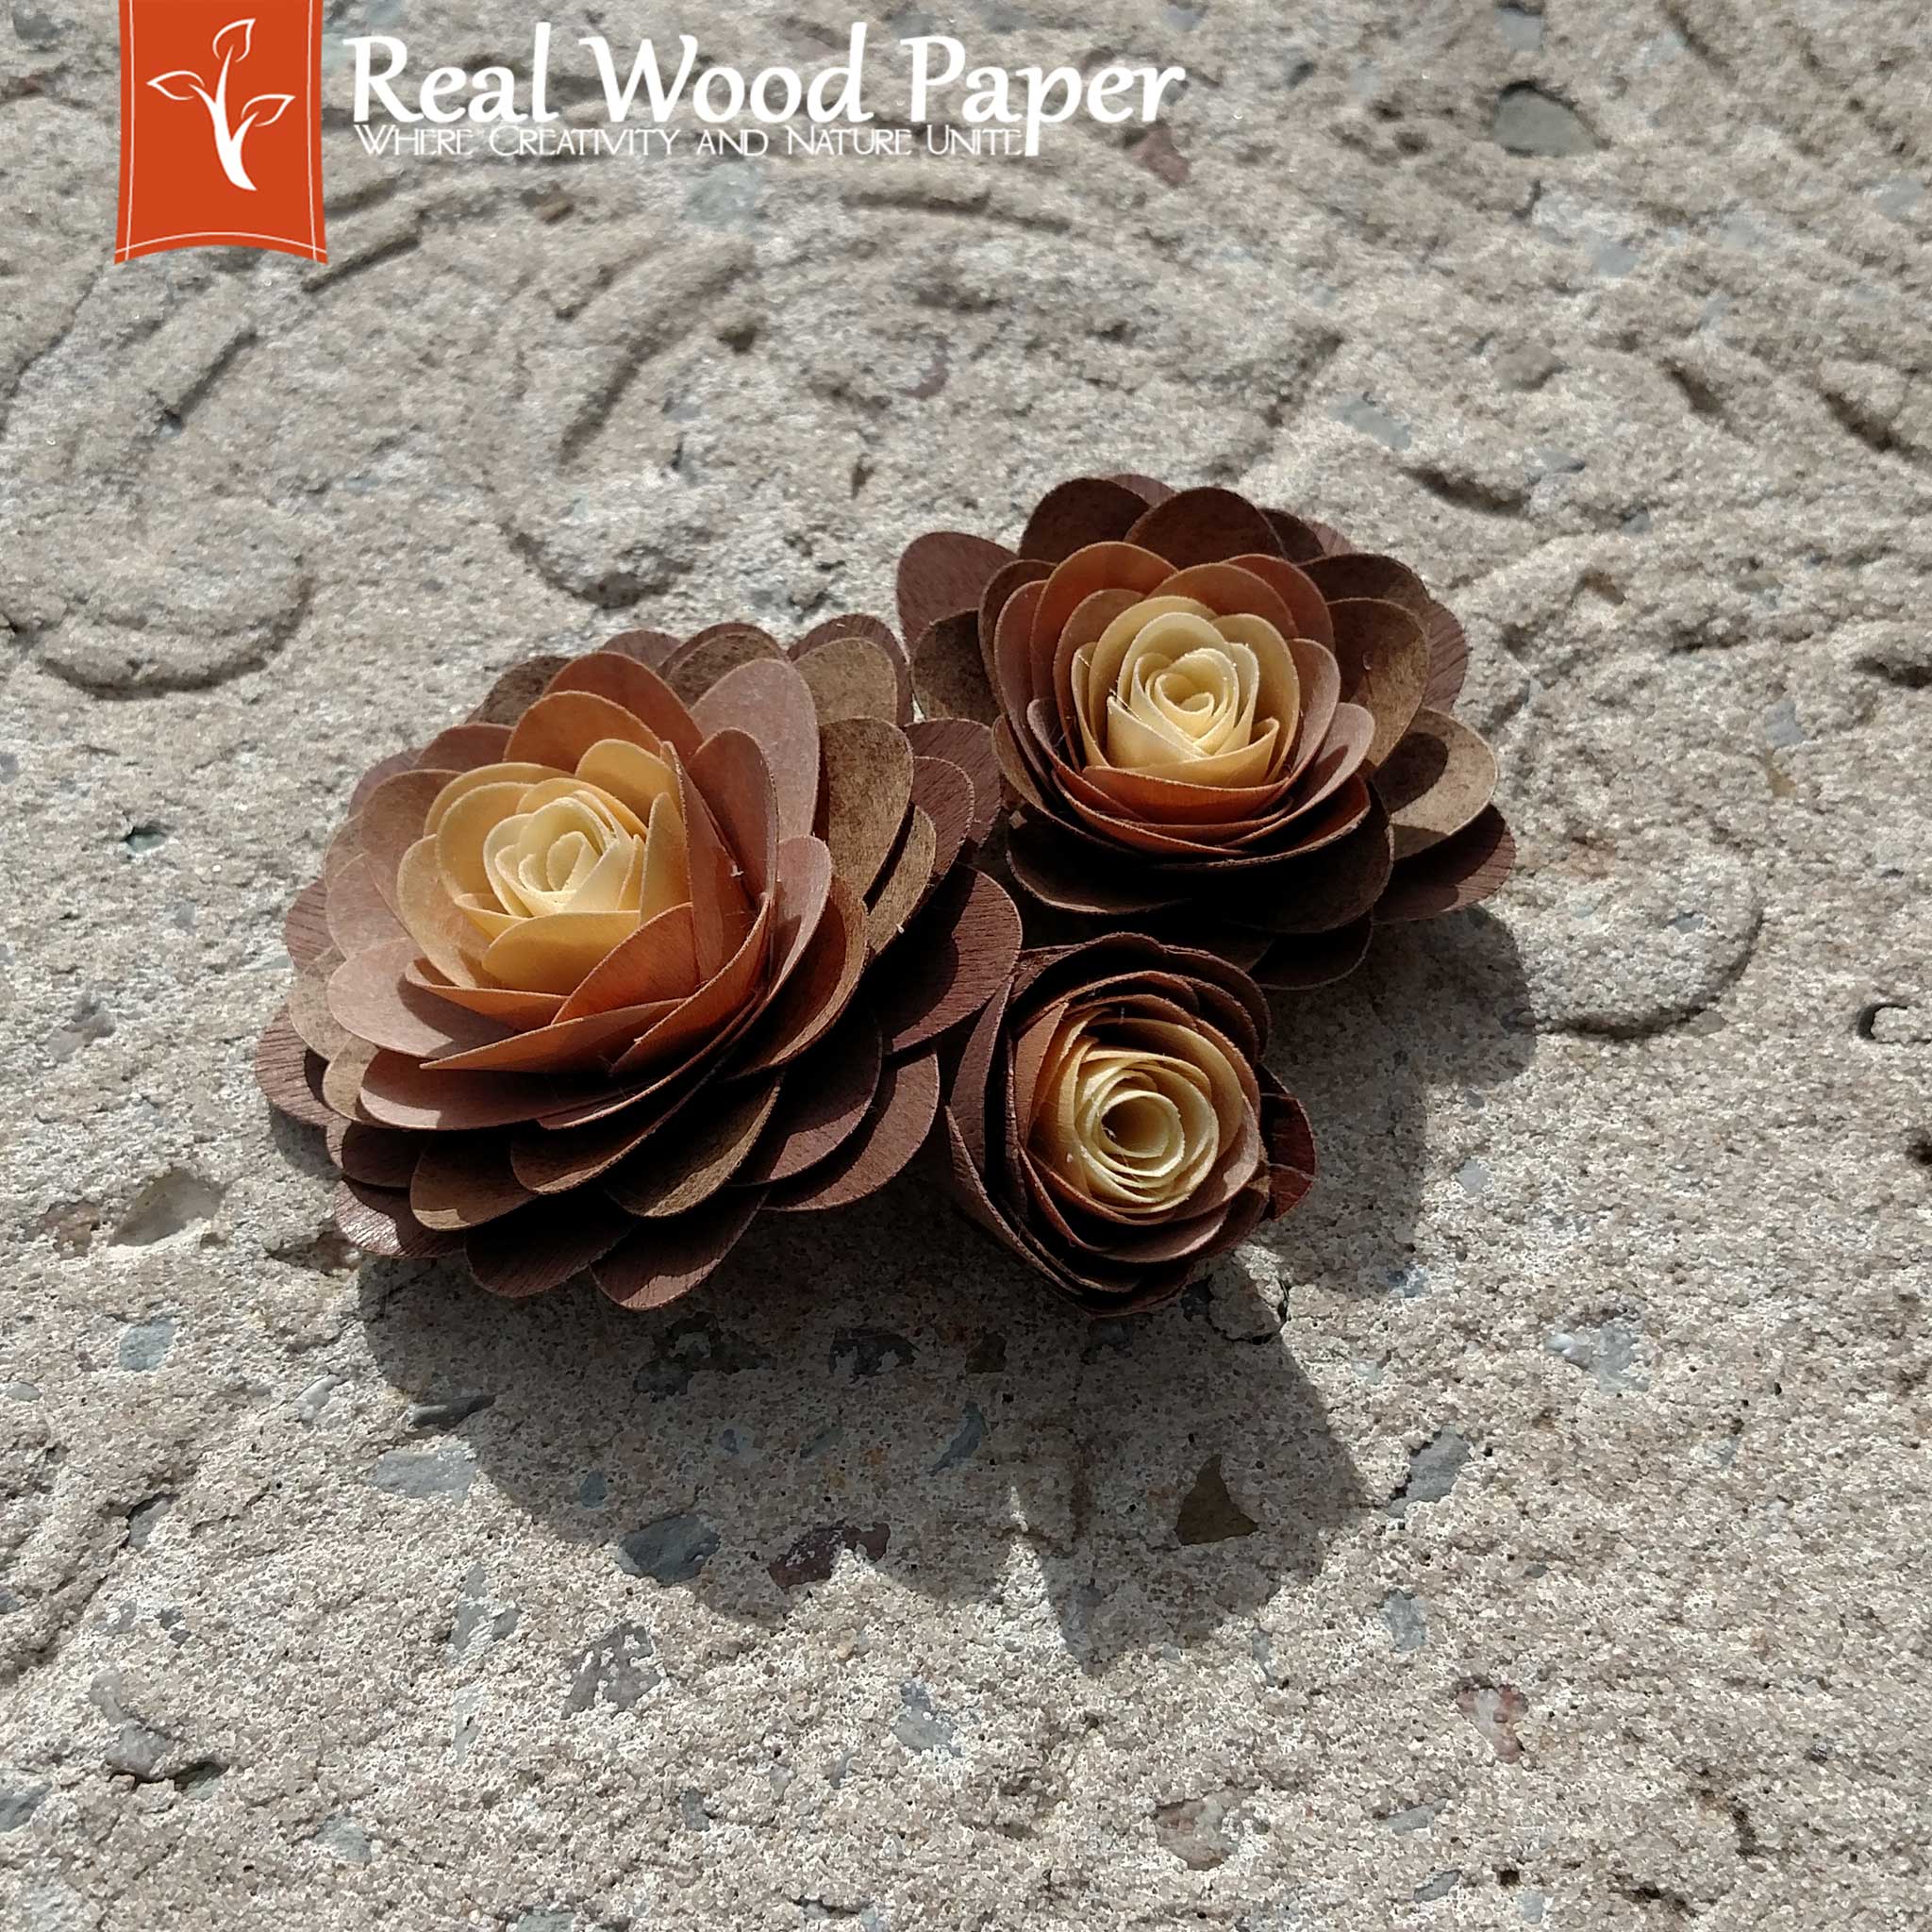 DIY Real Wood Paper Roses